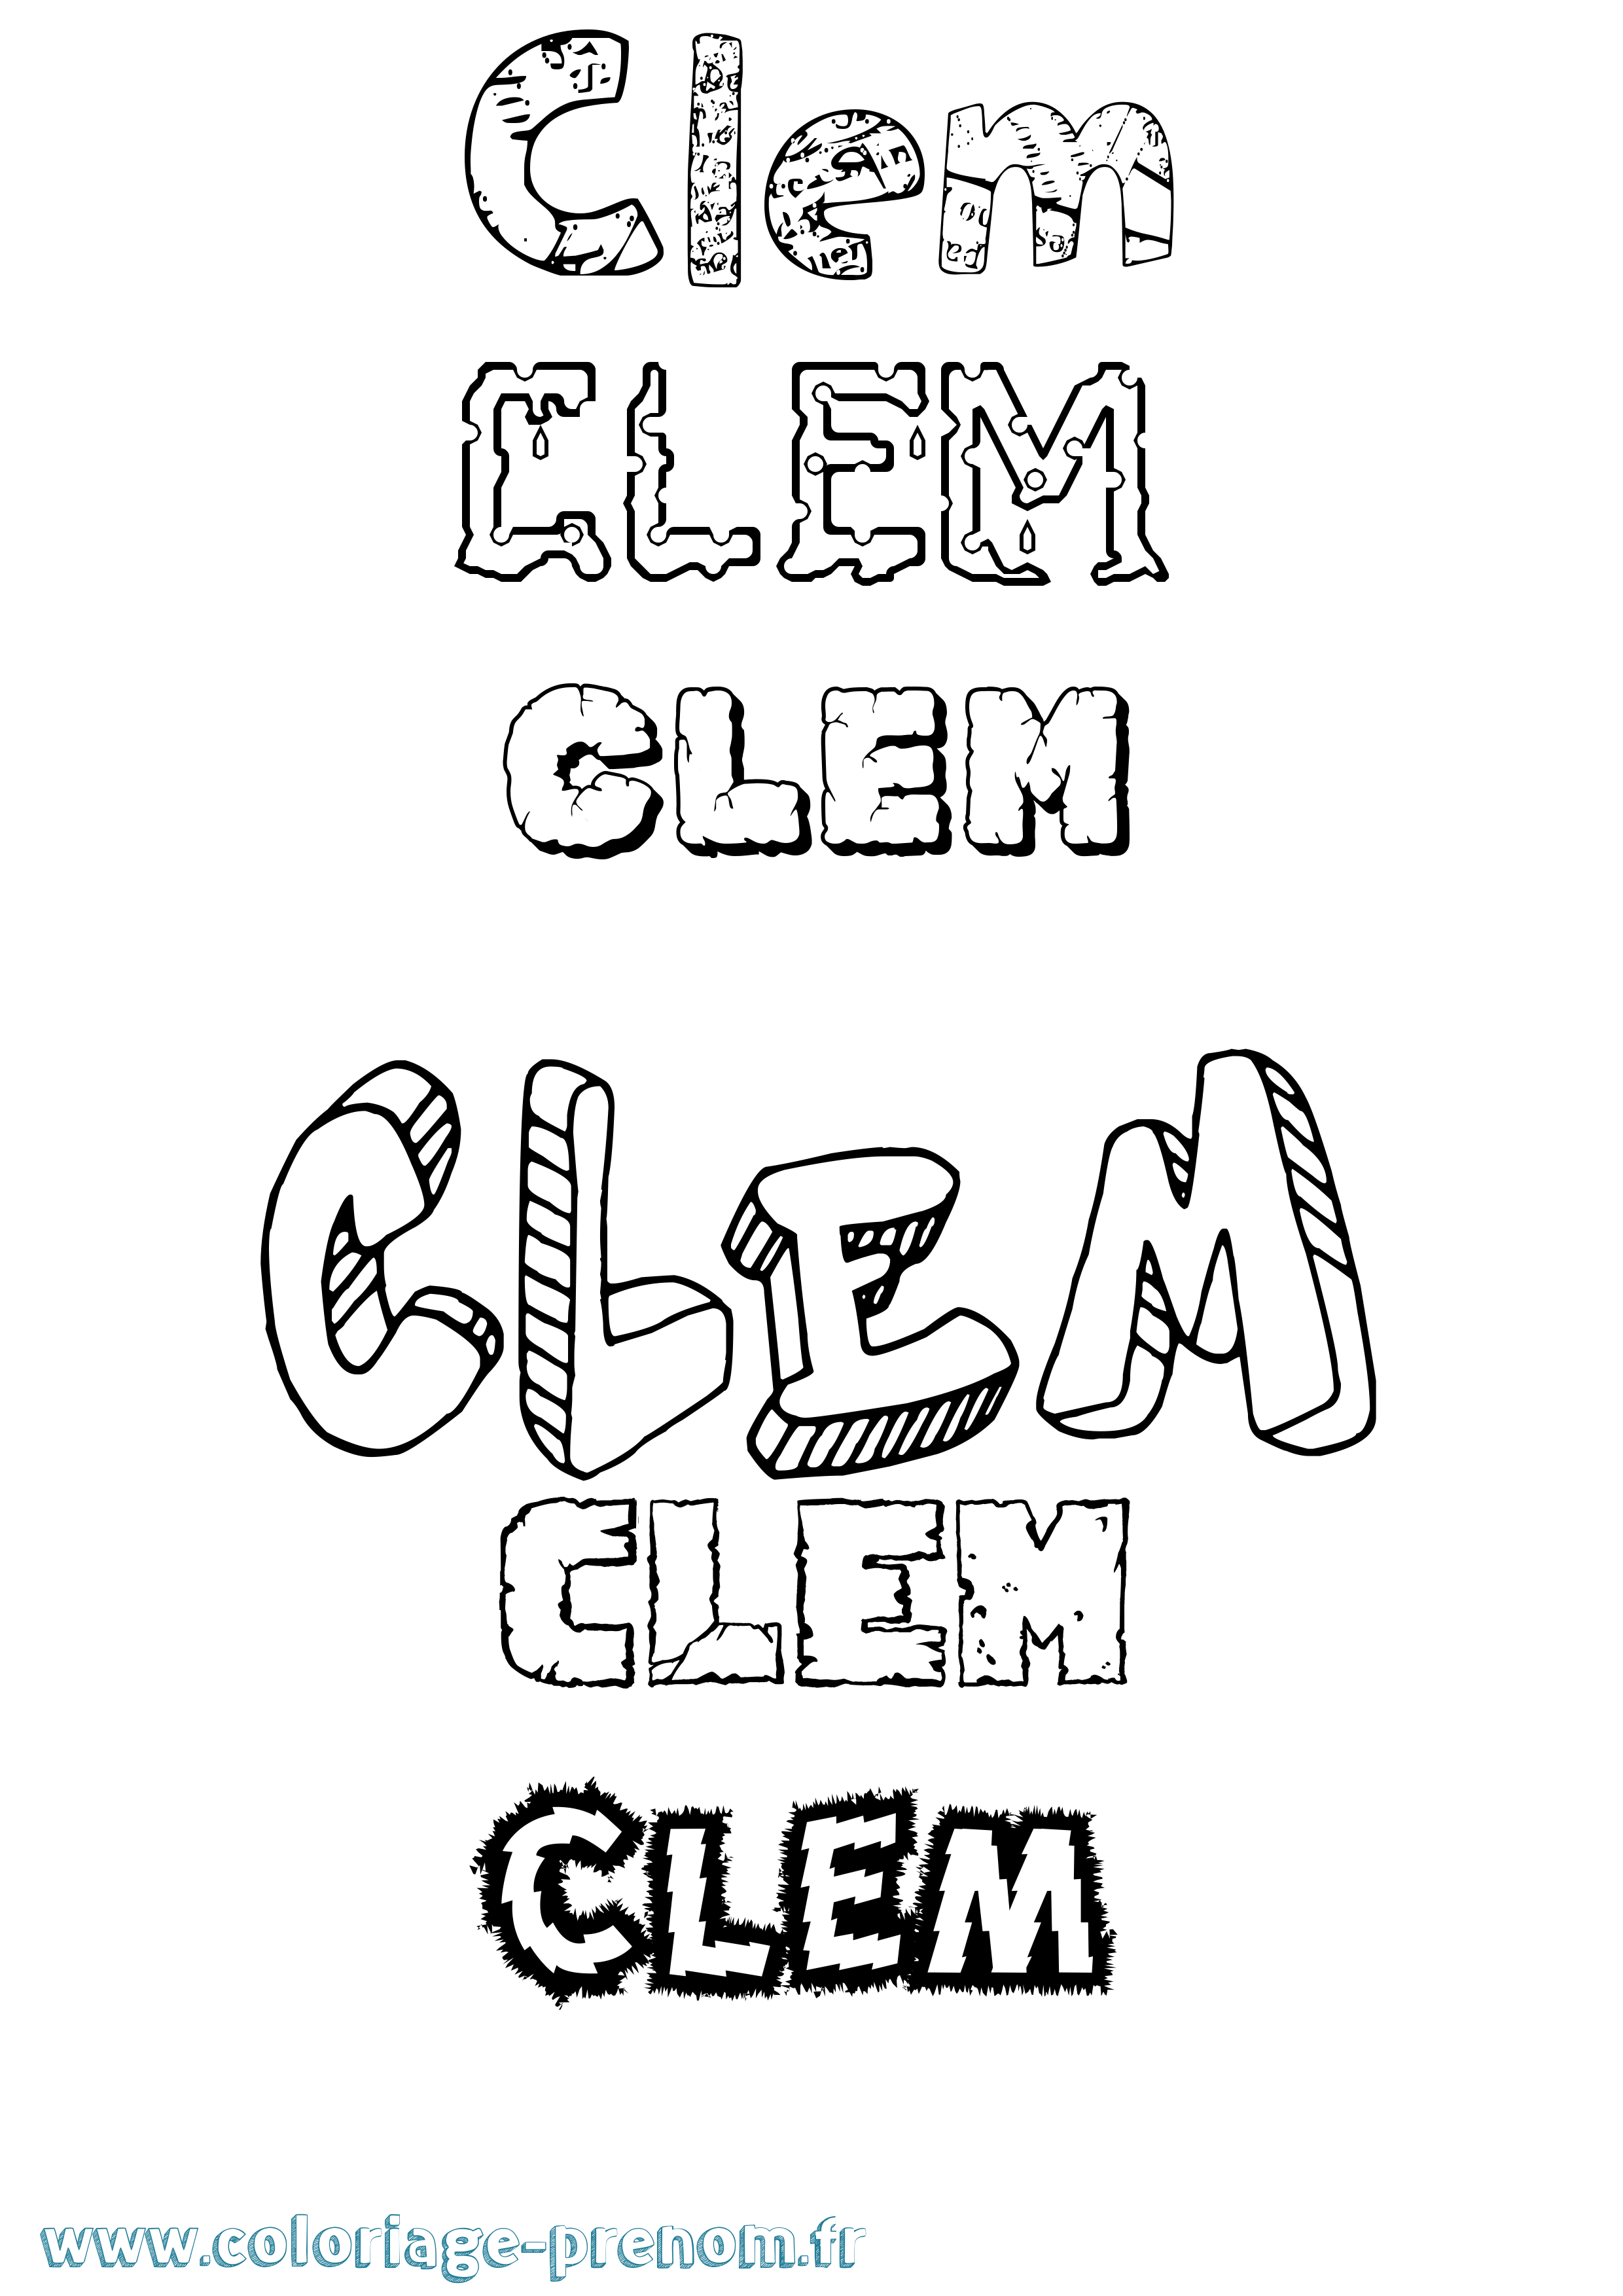 Coloriage prénom Clem Destructuré